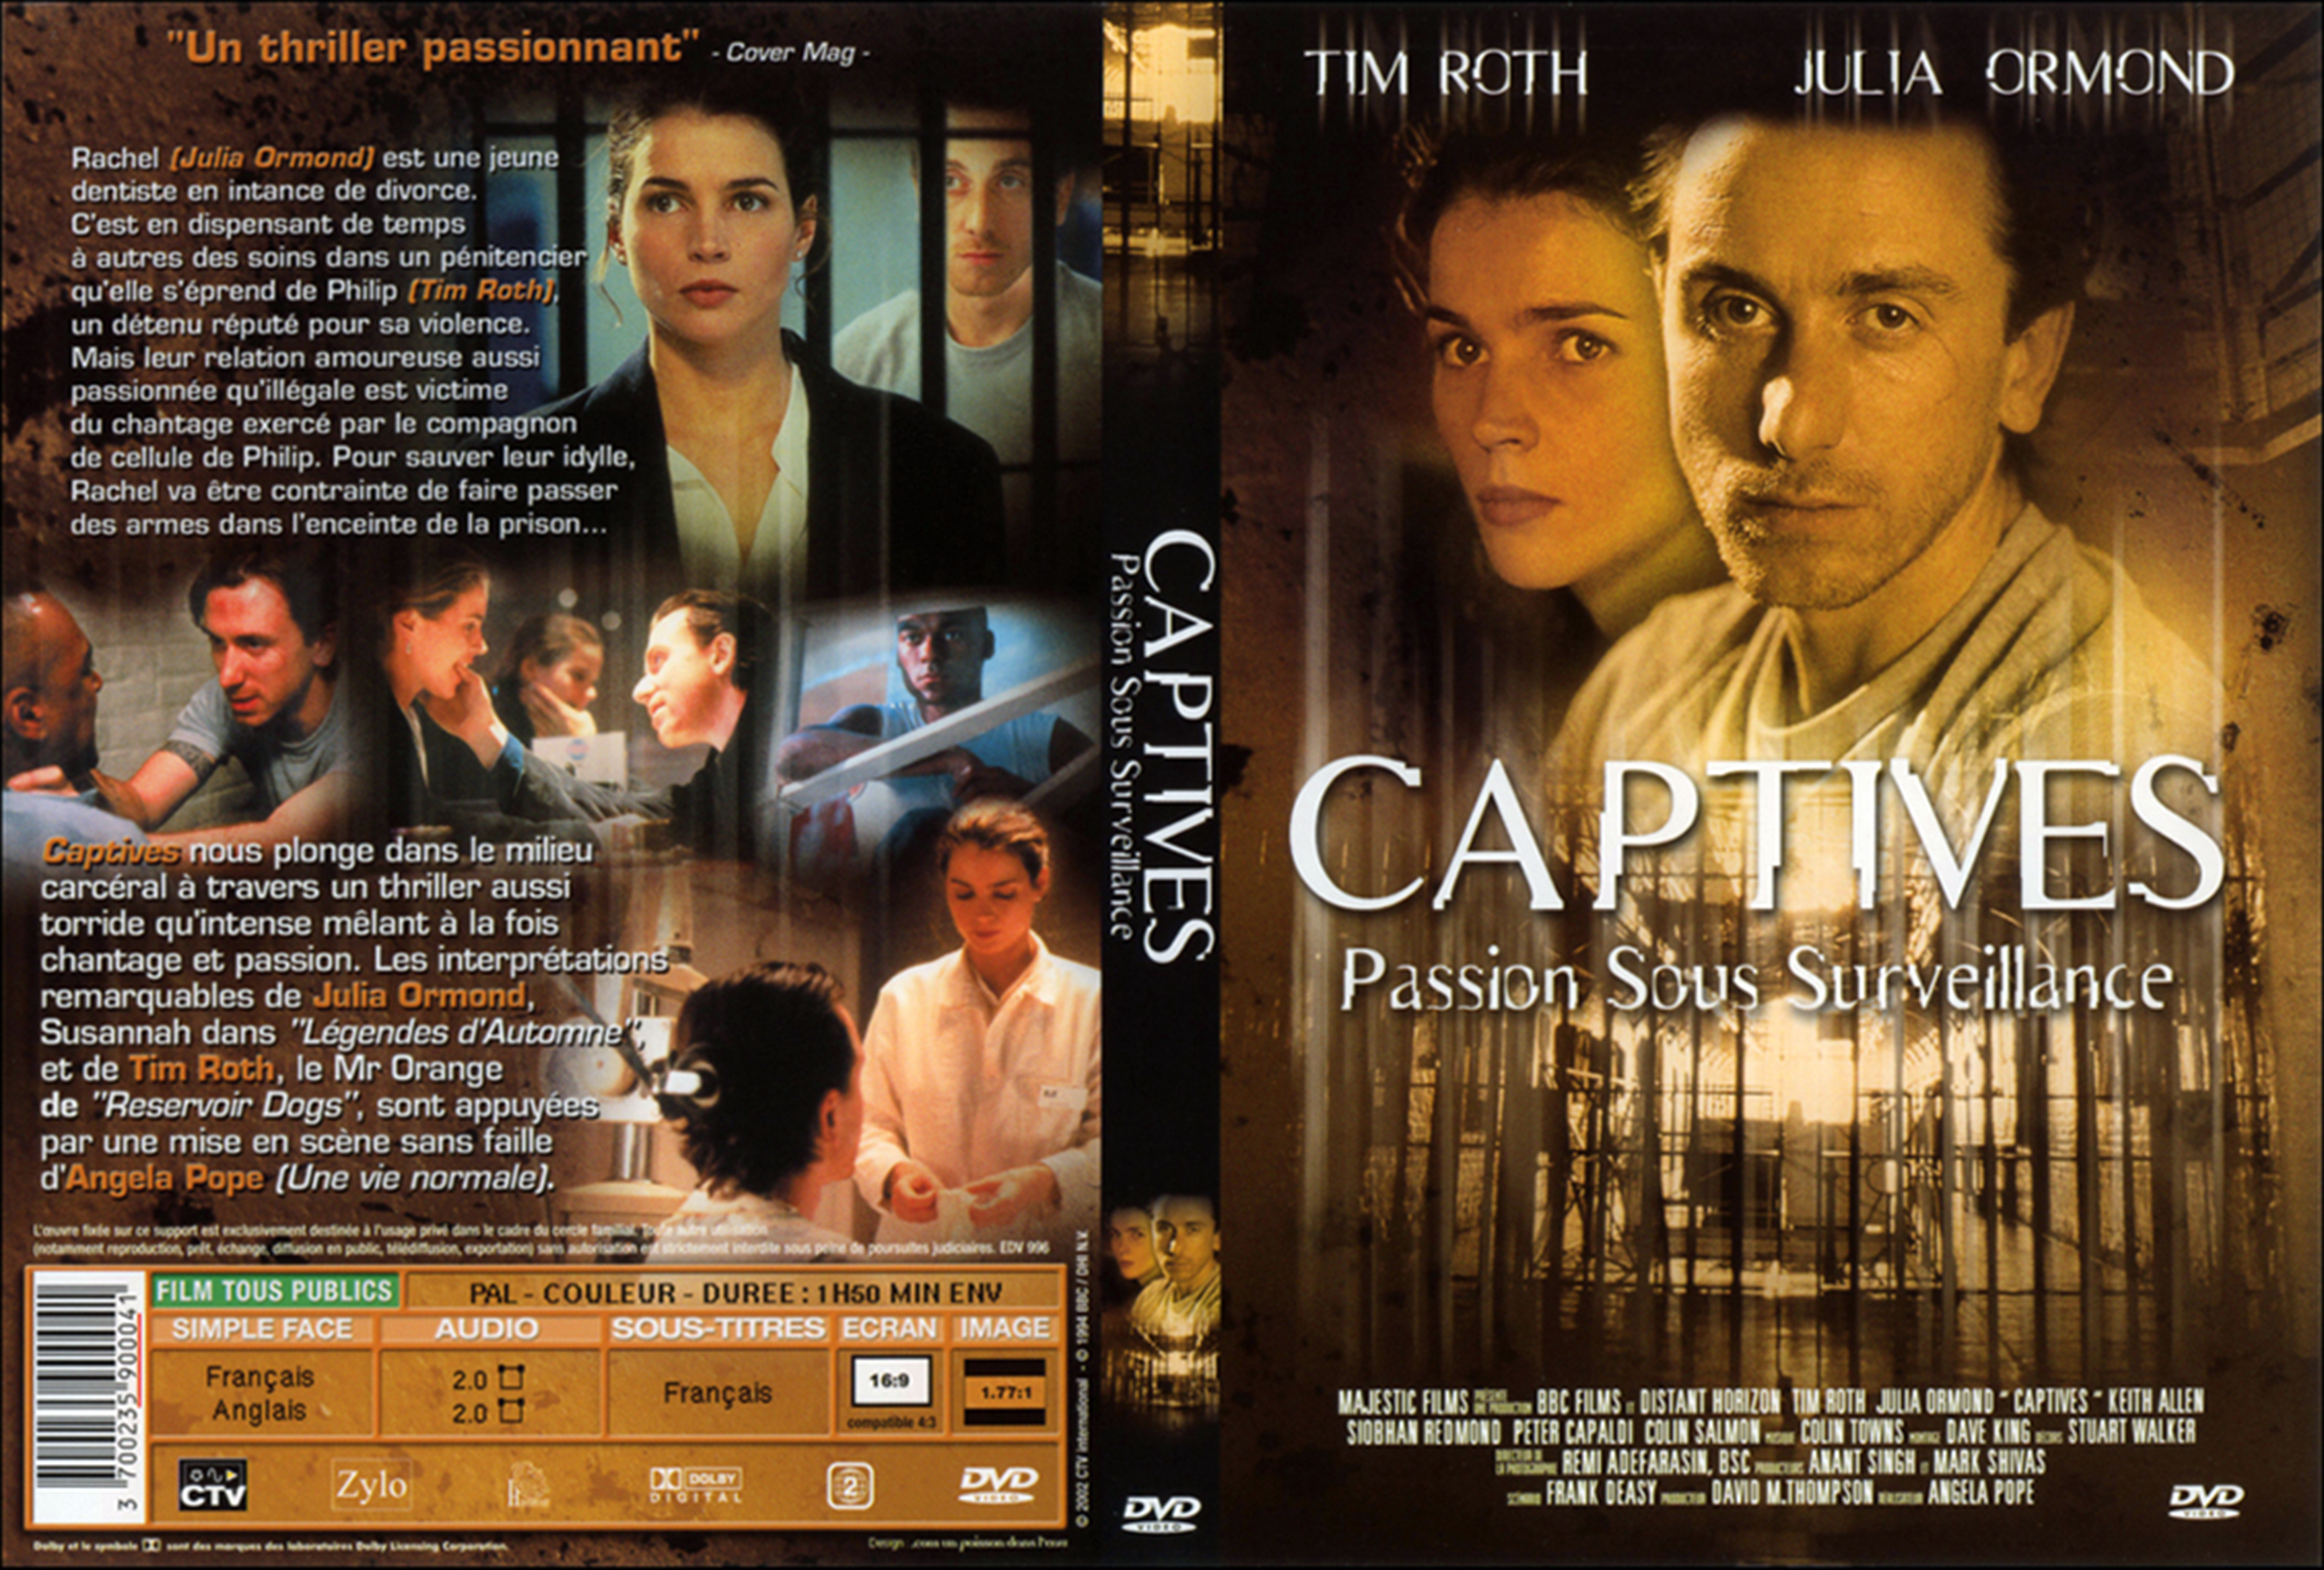 Jaquette DVD Captives passion sous surveillance